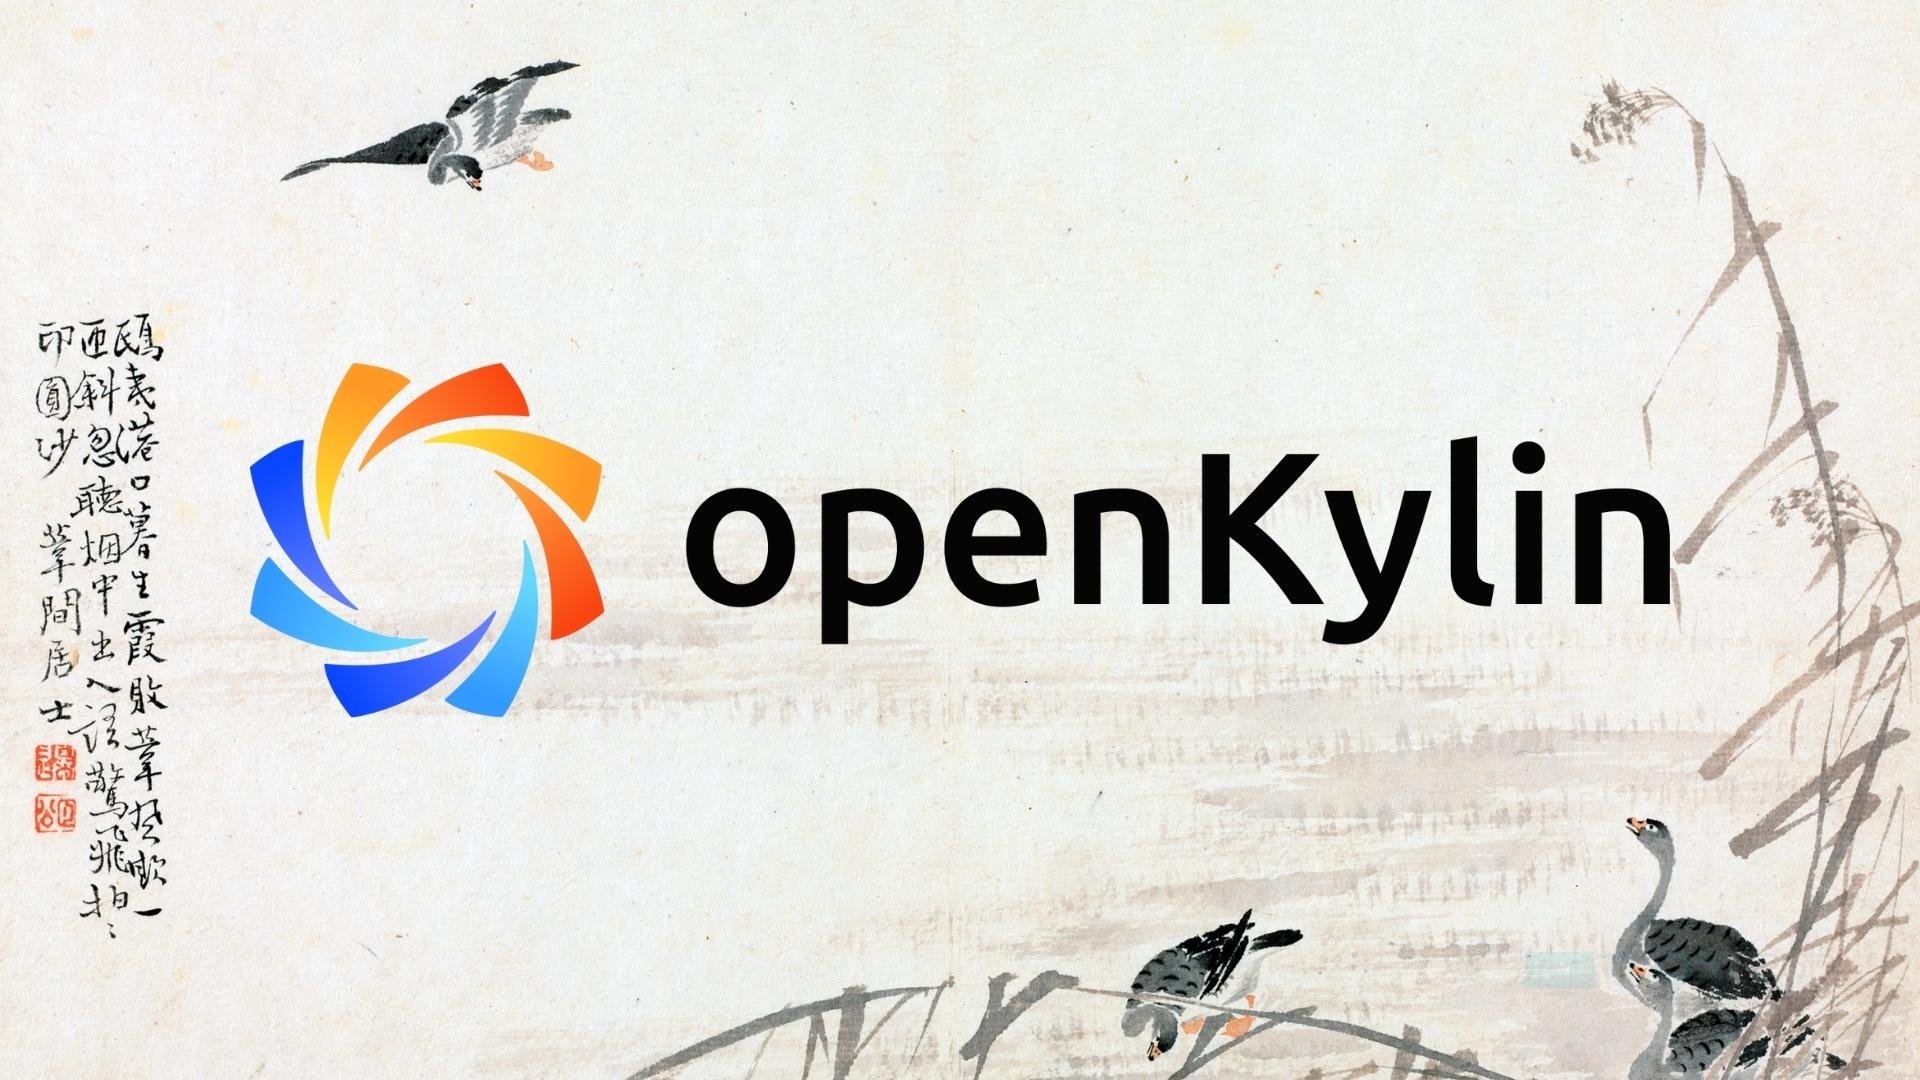 openKylin